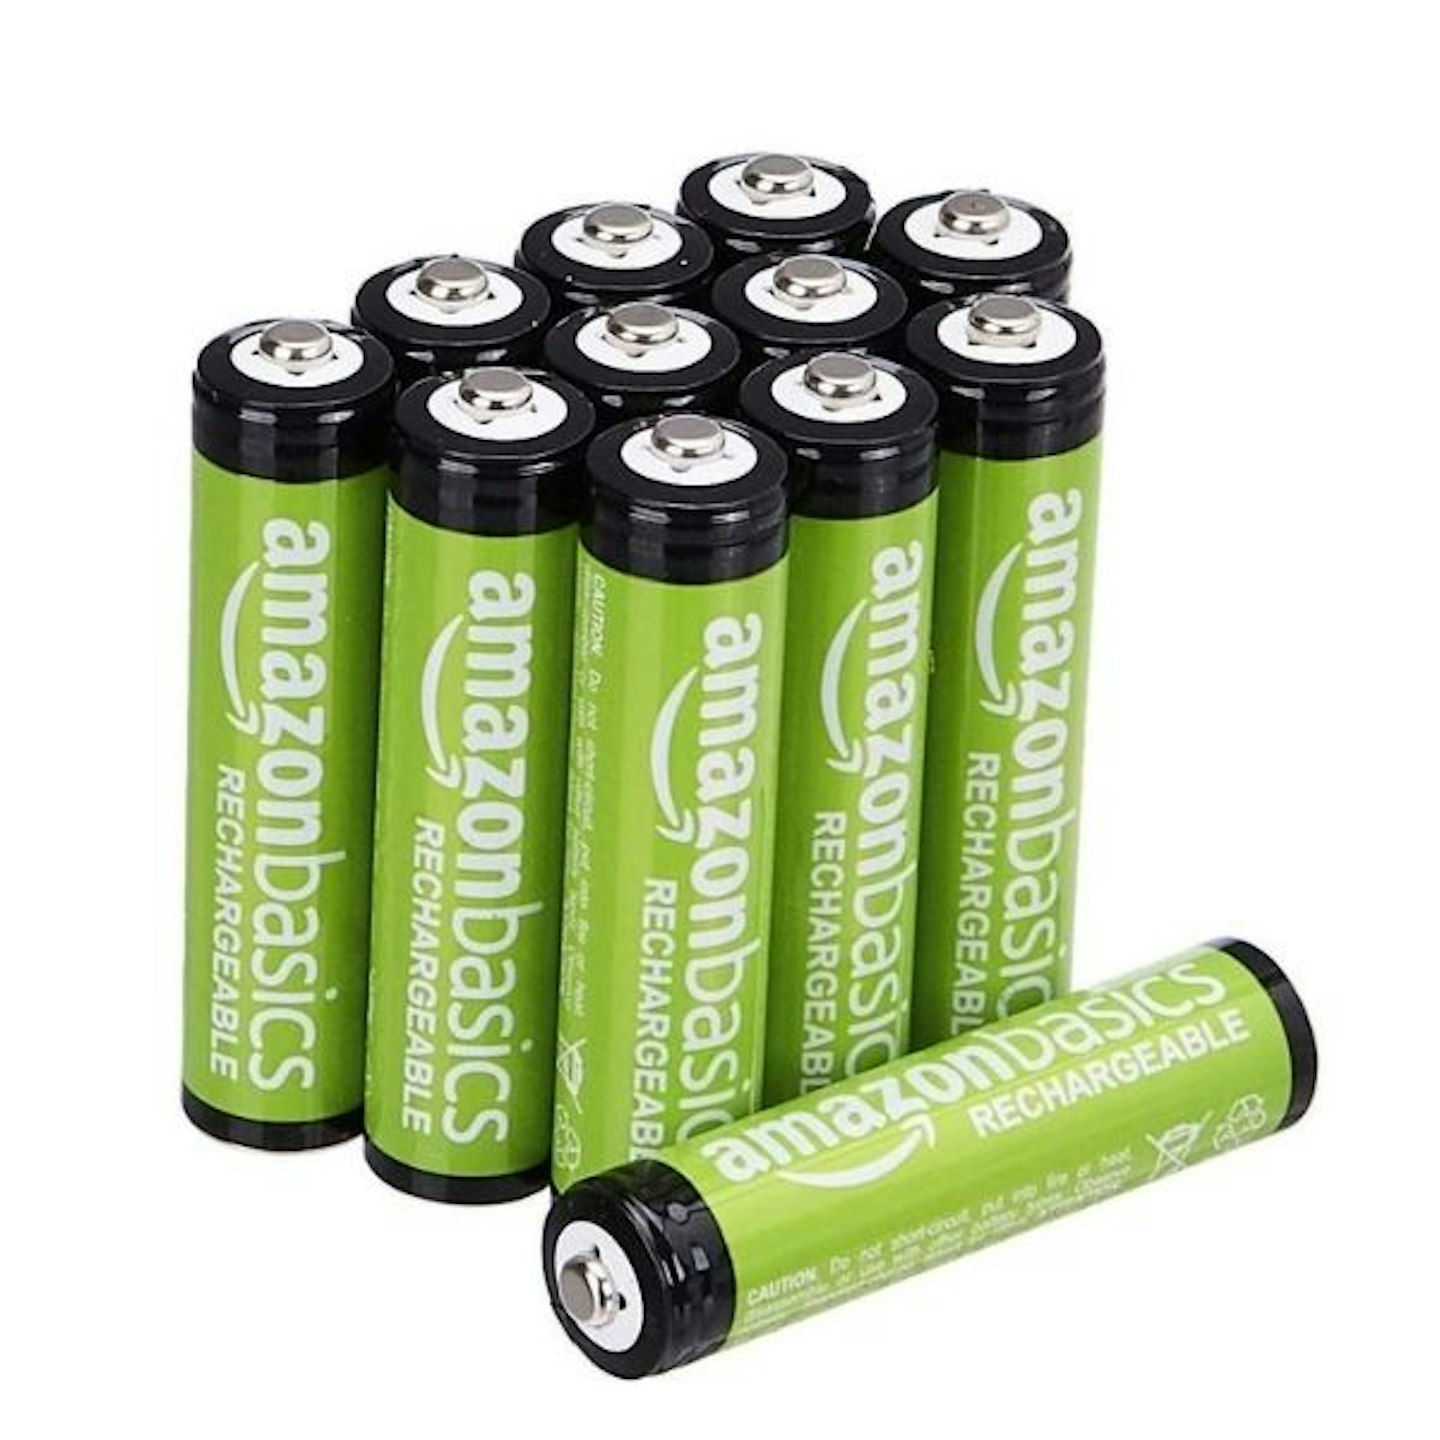 Amazon Basics AAA Rechargeable Batteries